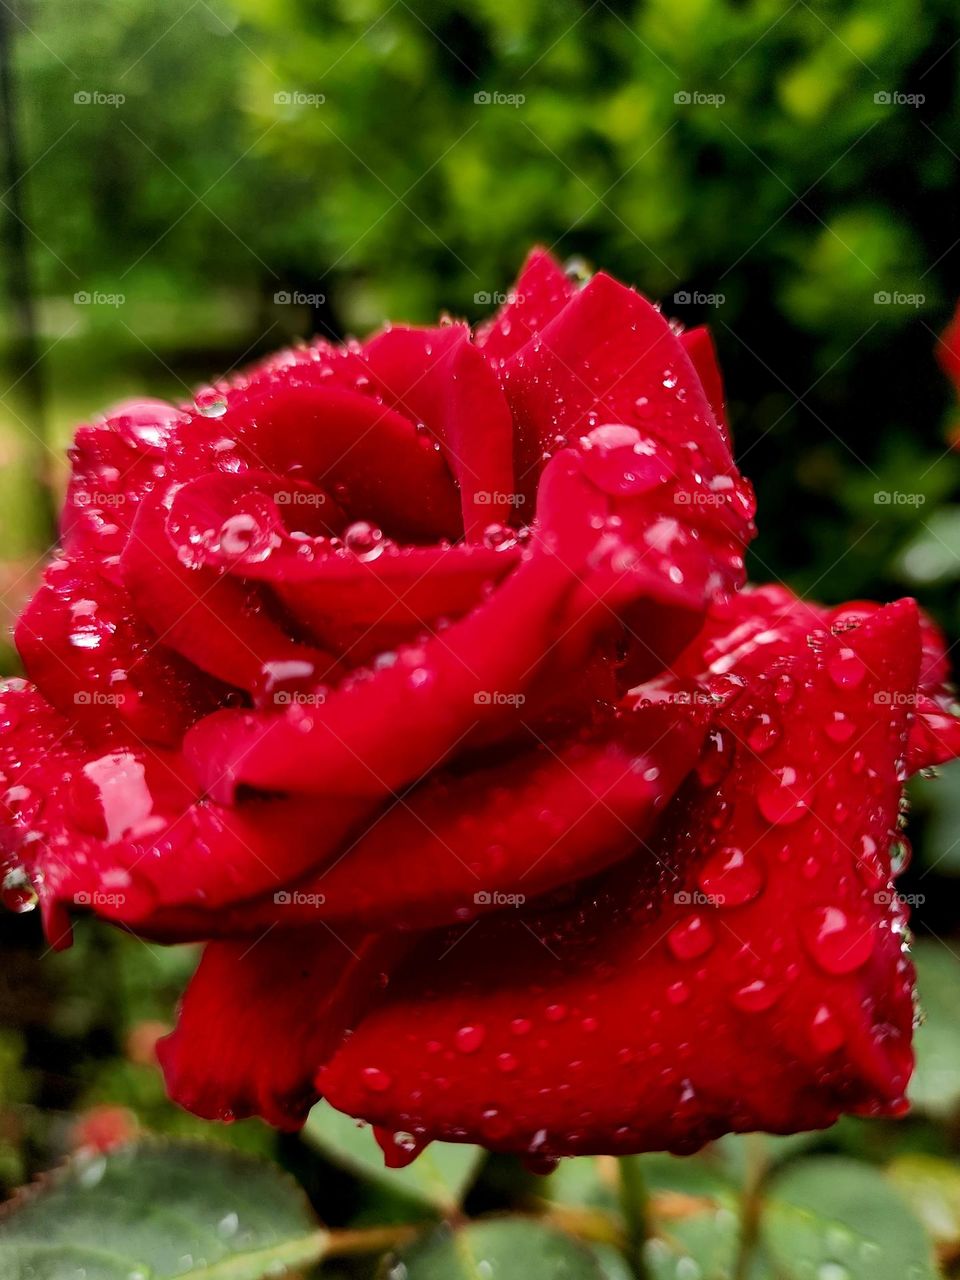 rainy day roses